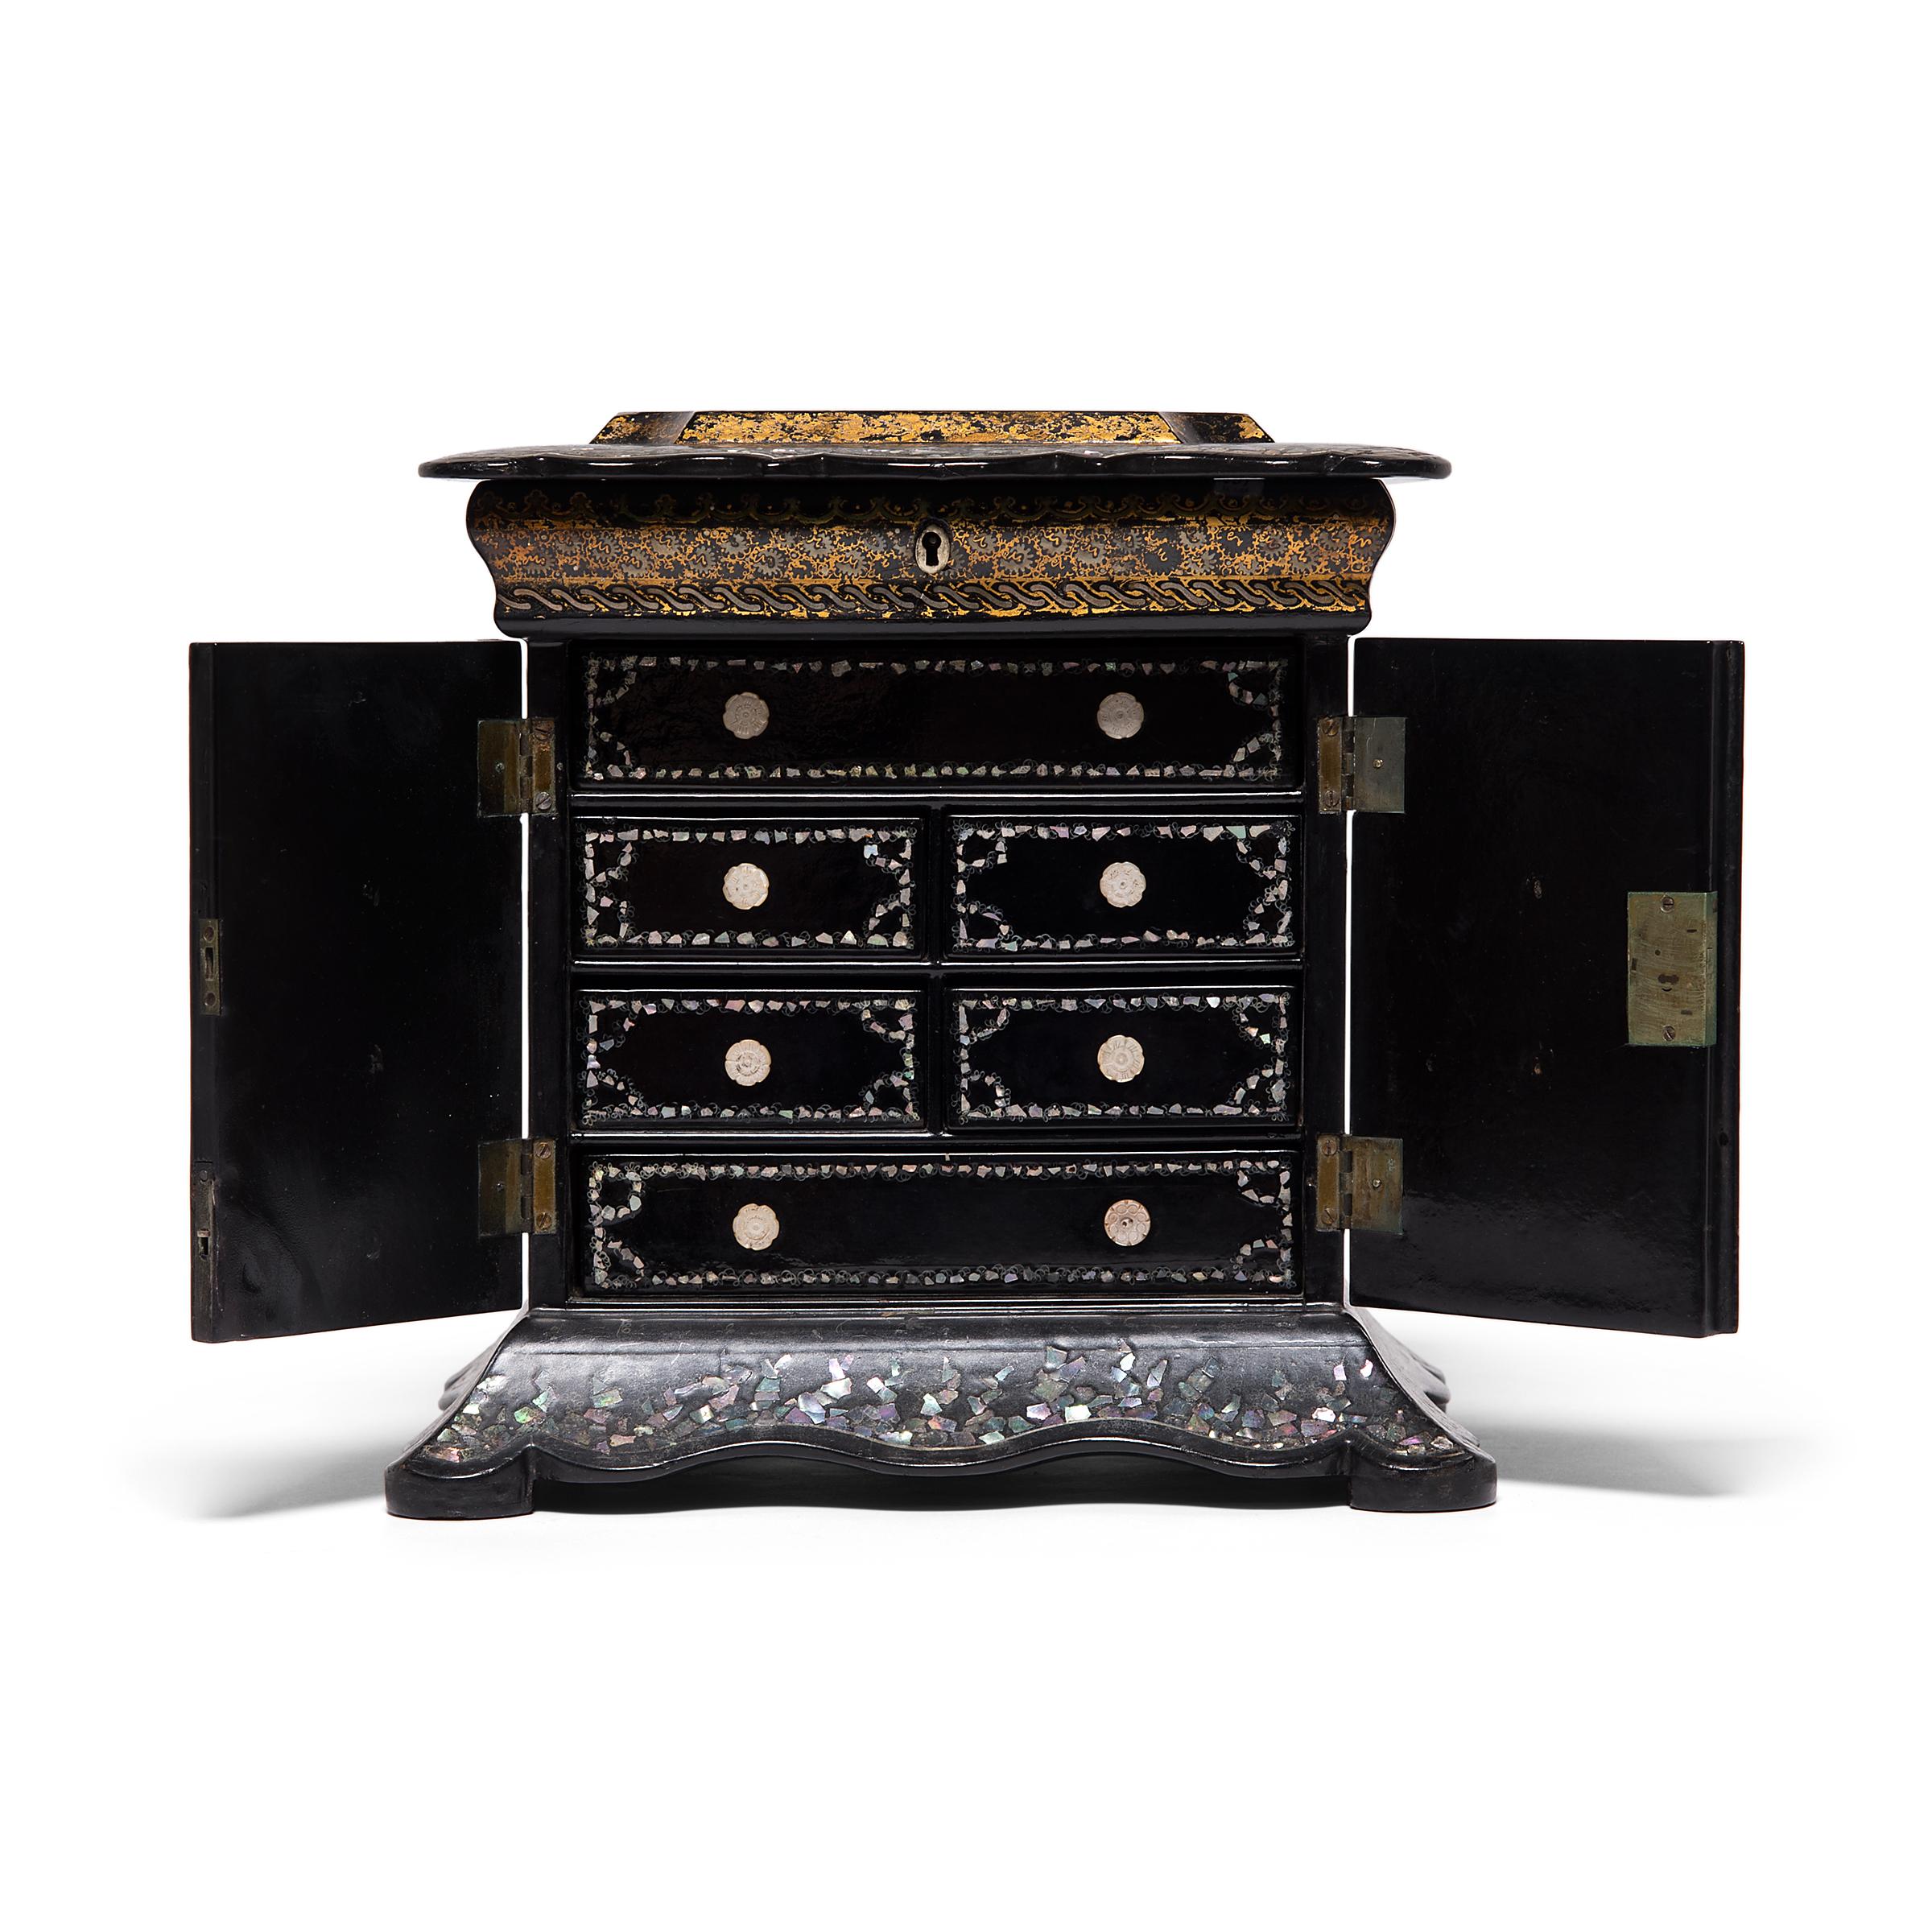 Diese kostbare englische Tischschatulle aus dem 19. Jahrhundert ist mit Perlmuttintarsien und geschnitzten Muschelschubladen ausgestattet. Die Oberseite des Stücks ist mit einer gemalten Landschaft und einer gotischen Kirche verziert, in die